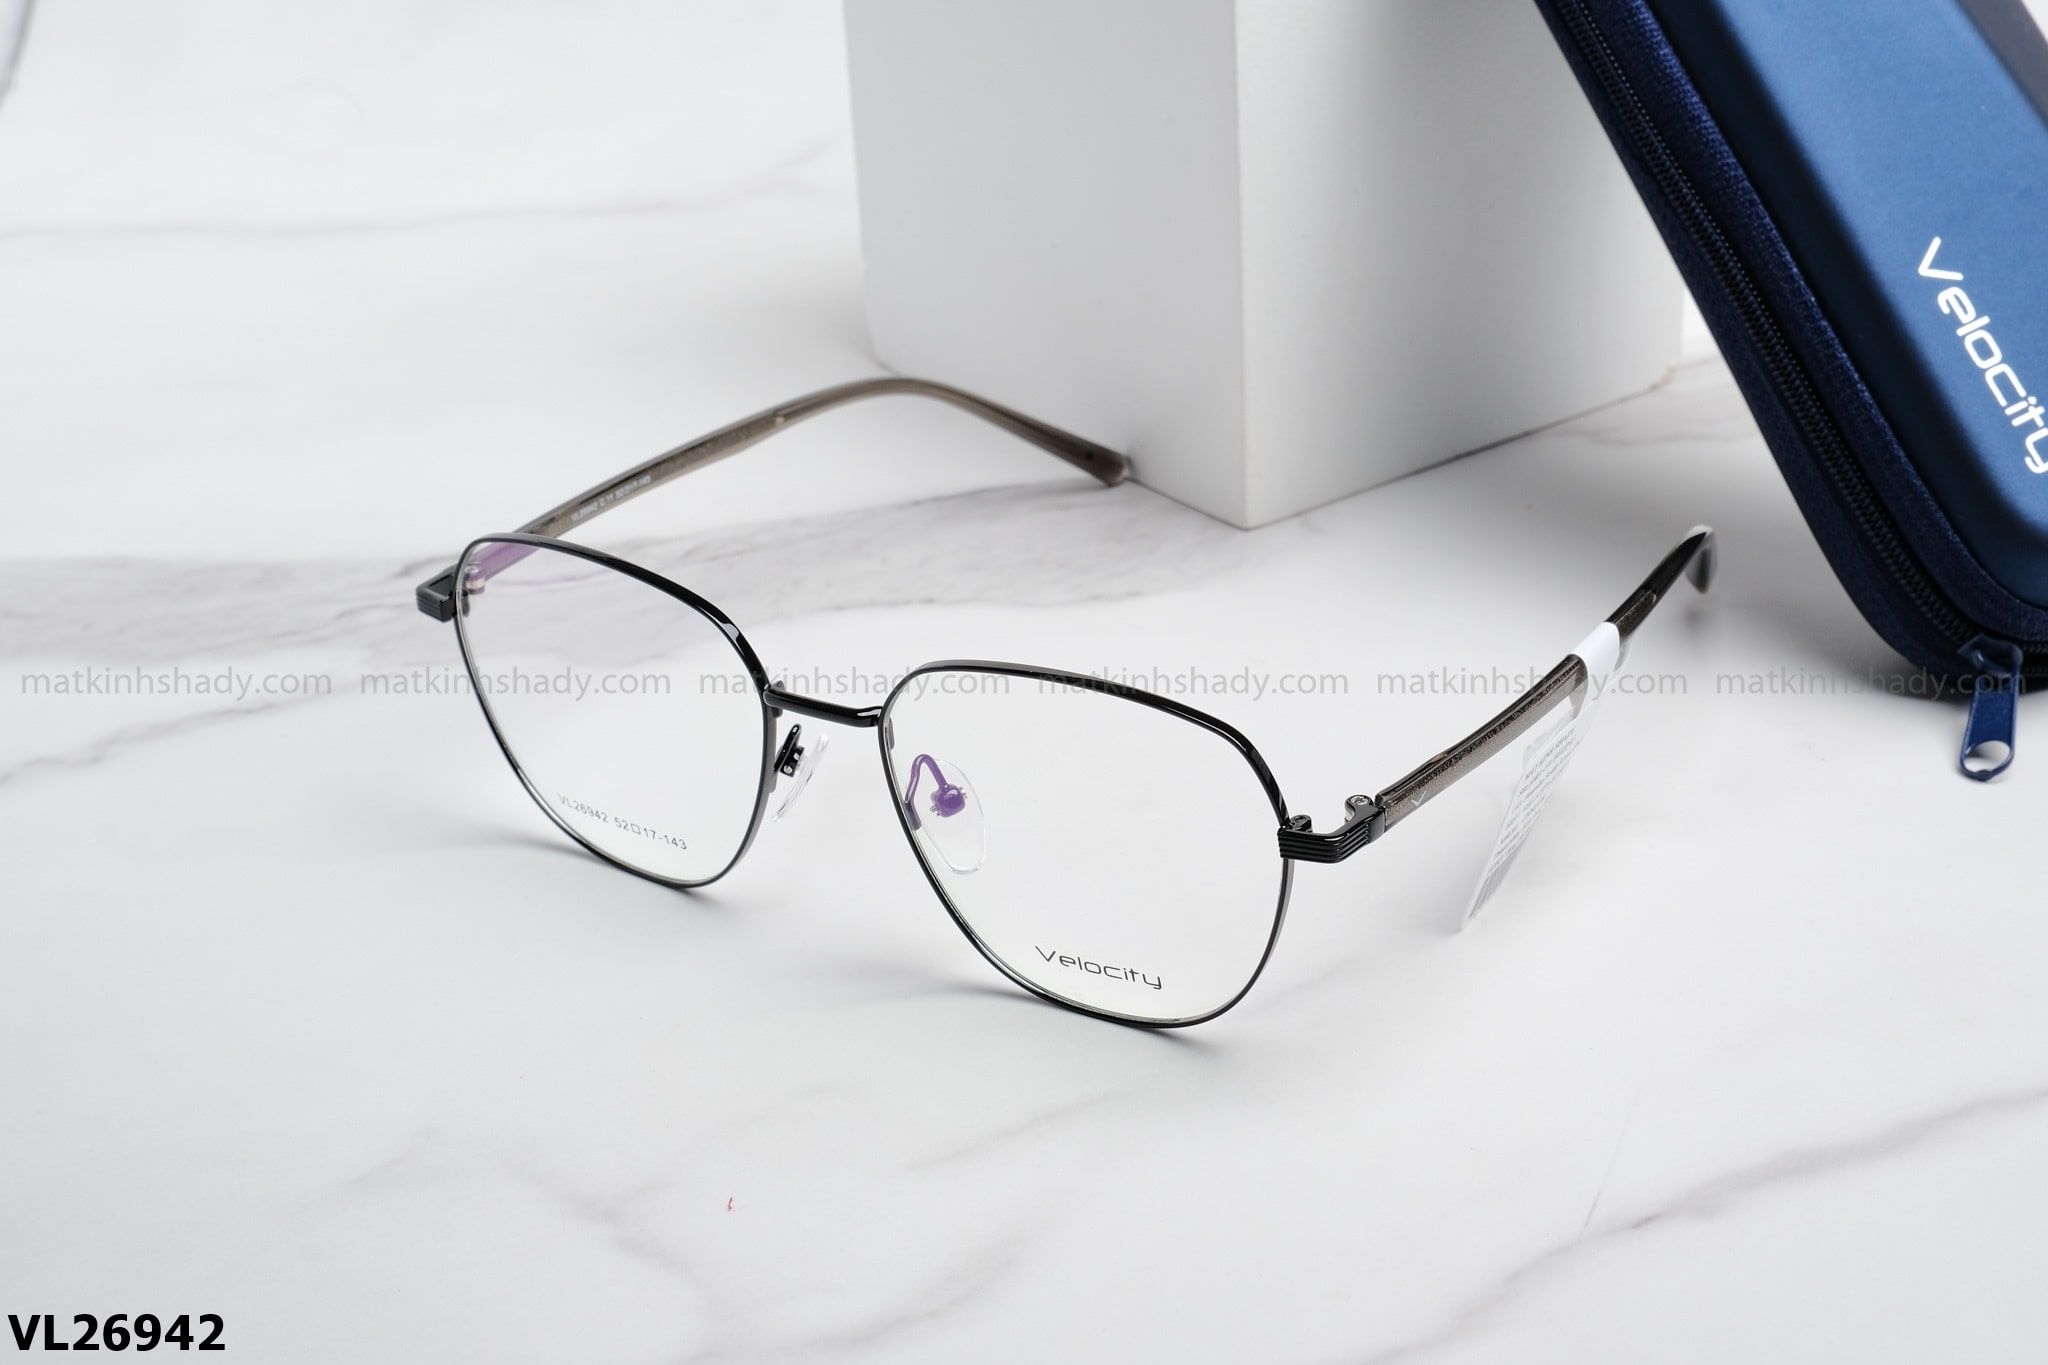  Velocity Eyewear - Glasses - VL26942 